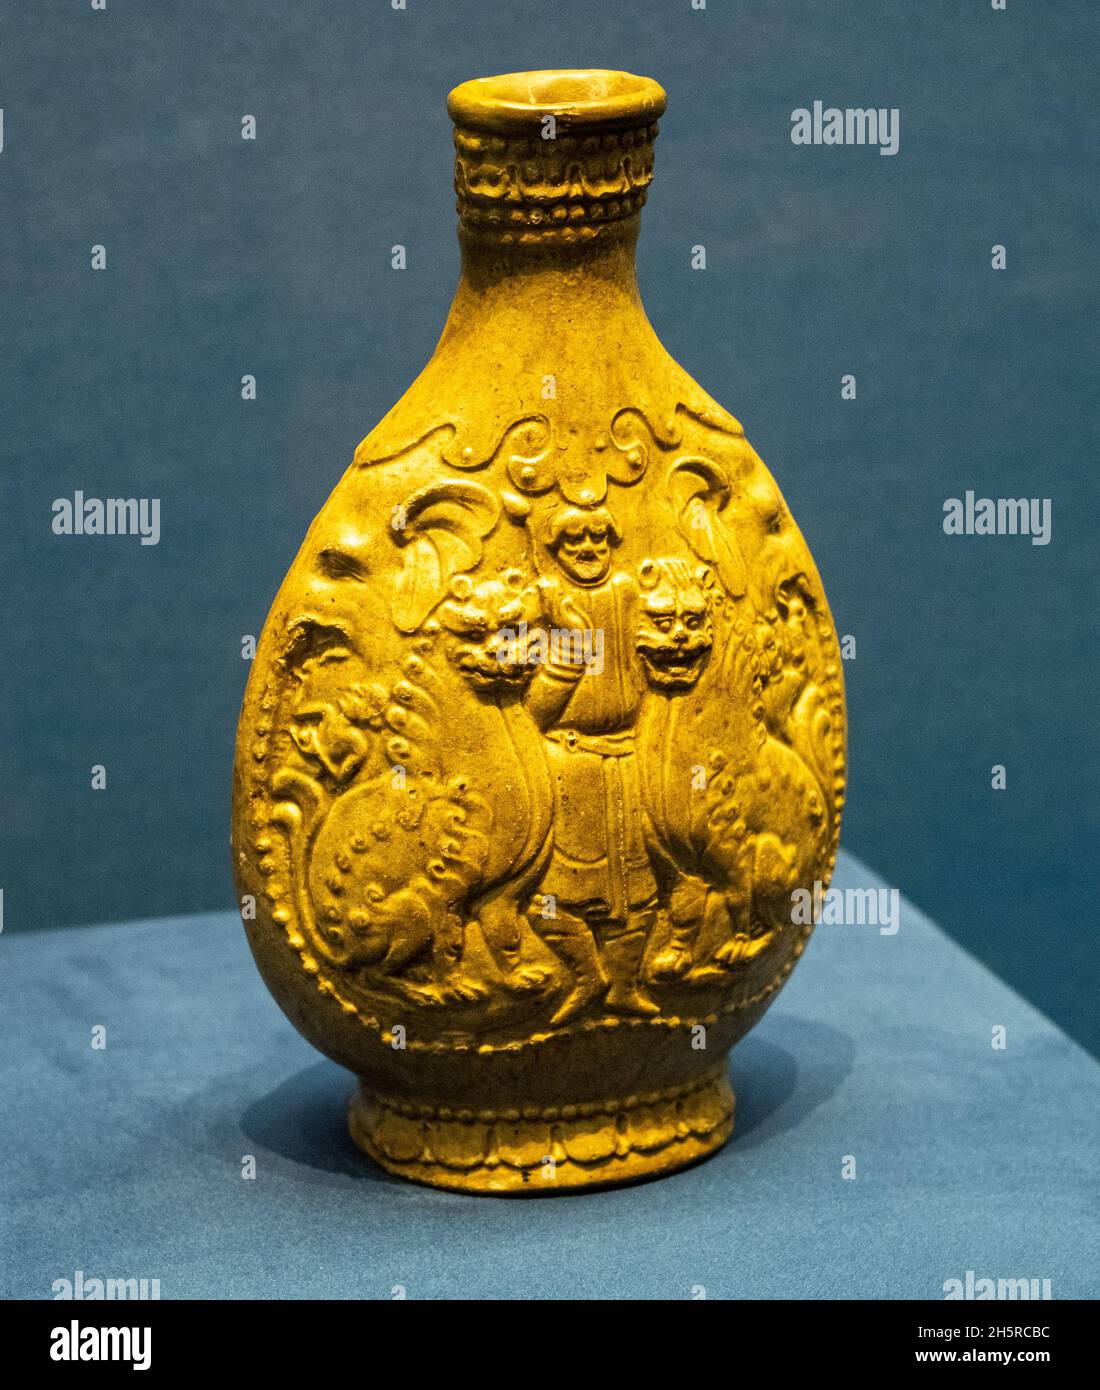 Grün glasierte flache hu mit Ausländern, die Löwen tanzen. Nördliche Qi-Dynastie, 550-577 u.Z. In der Sammlung des Shanxi Museums. Stockfoto